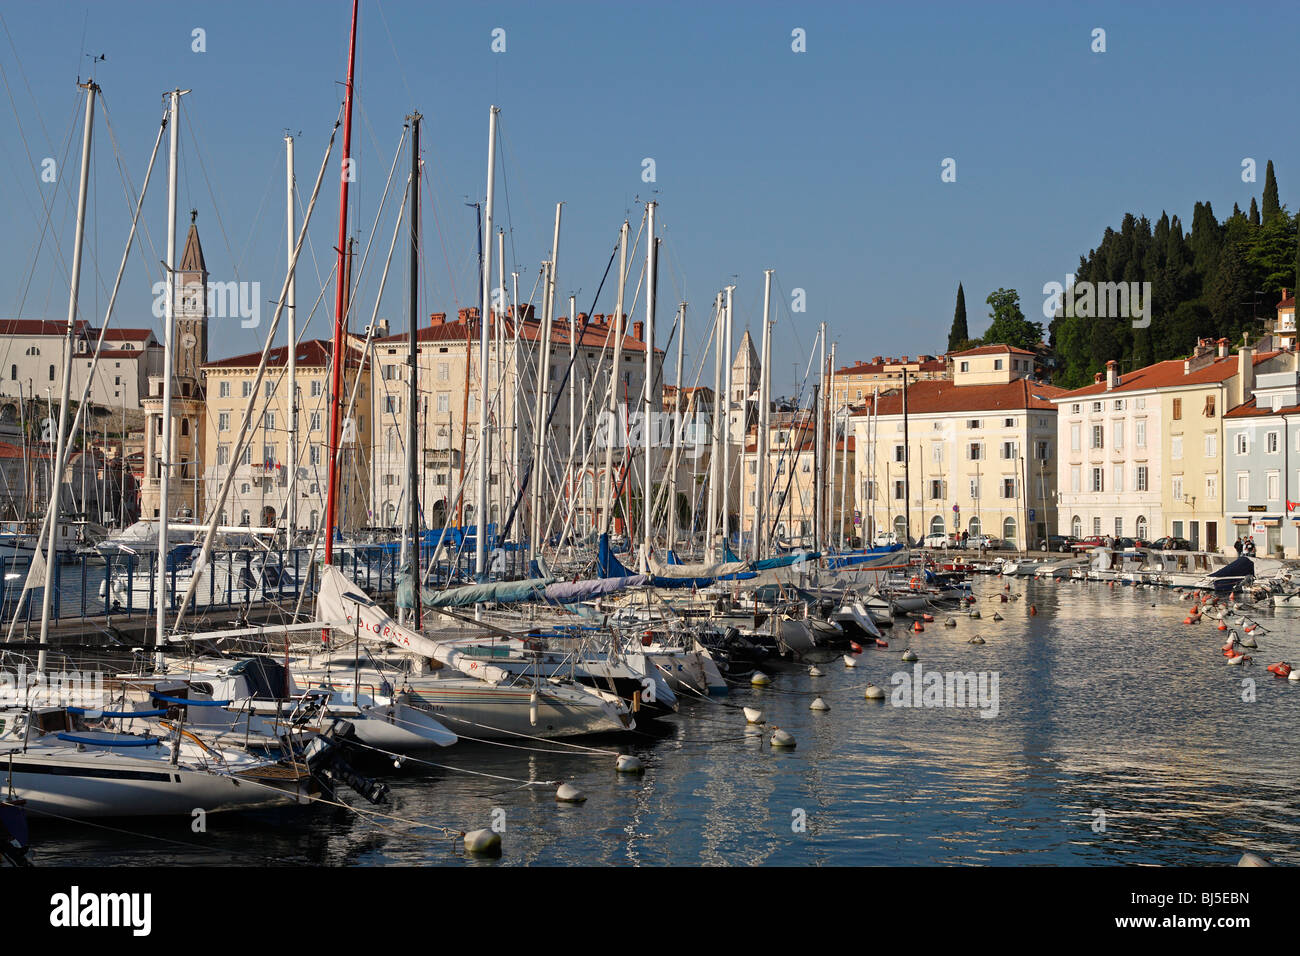 Piran,Piran Port,boats,sea front,Slovenia Stock Photo - Alamy